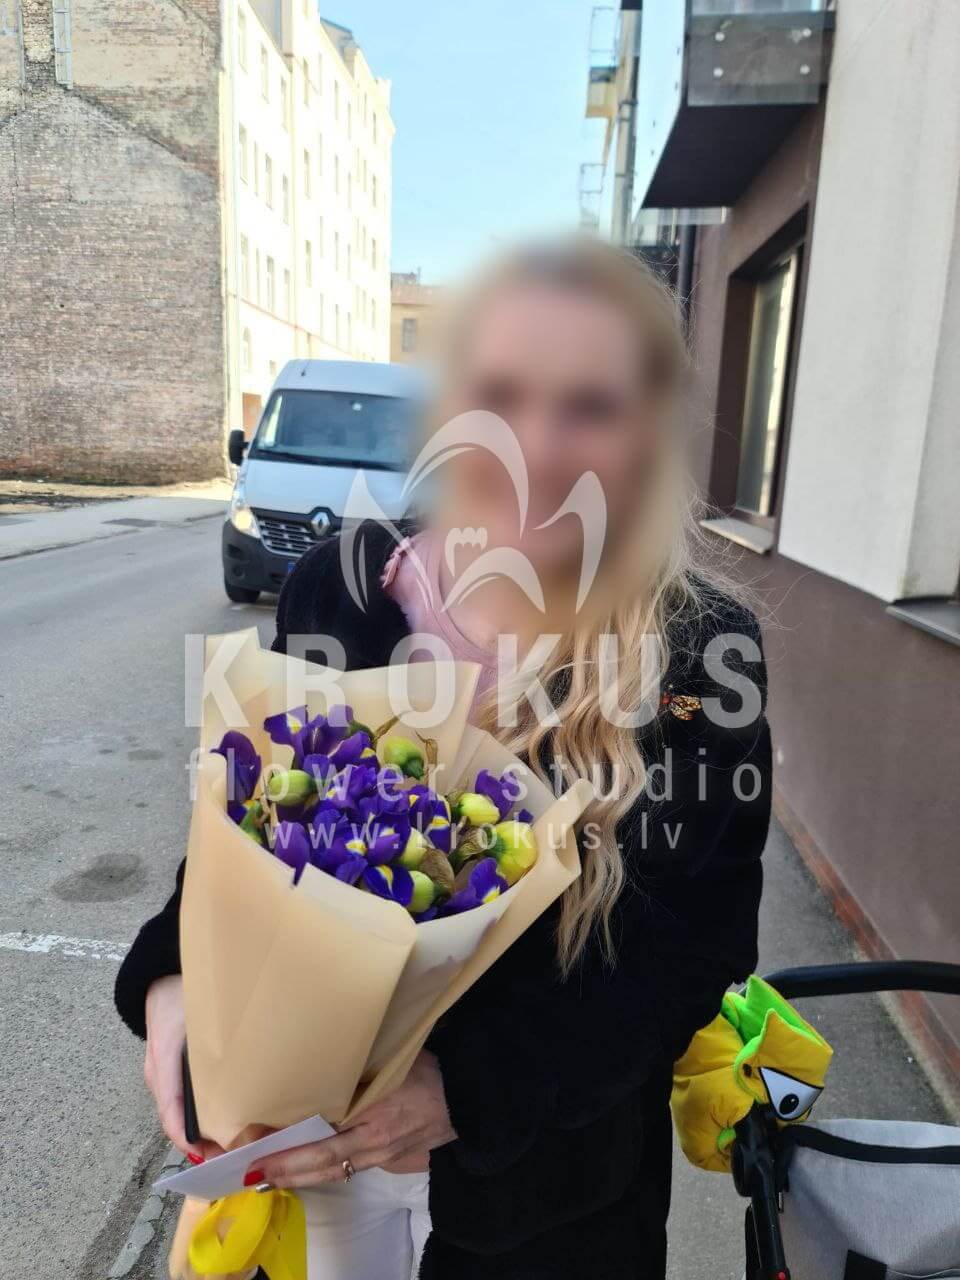 Доставка цветов в город Рига (нарциссирисы)